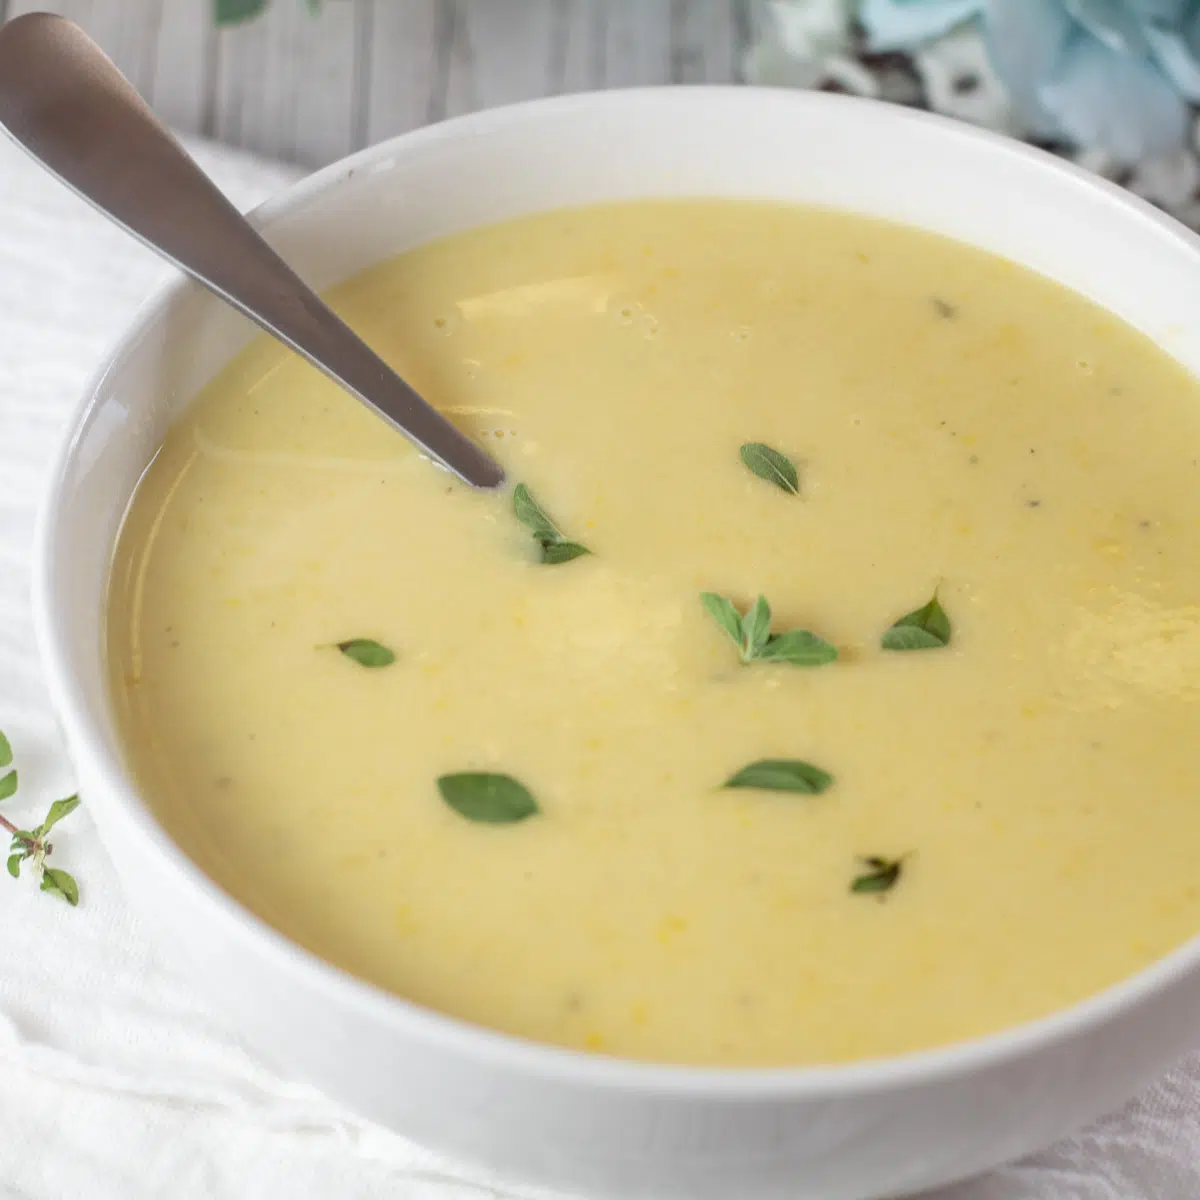 एक सफेद कटोरे में मलाईदार पीले स्क्वैश सूप की चौकोर छवि।